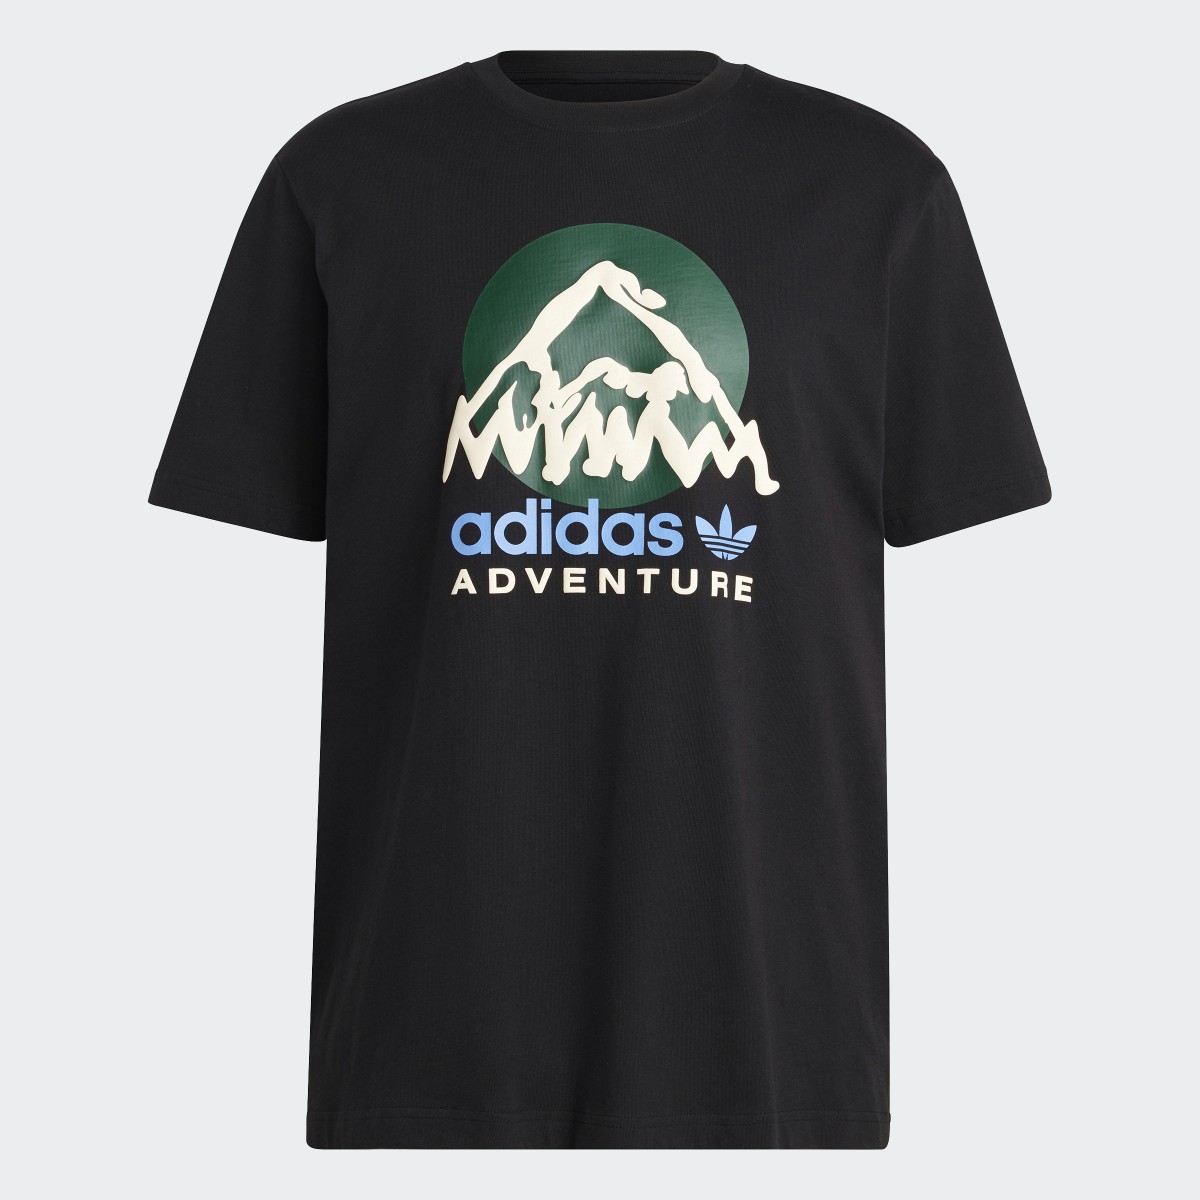 Adidas Adventure Mountain Front Tee. 5